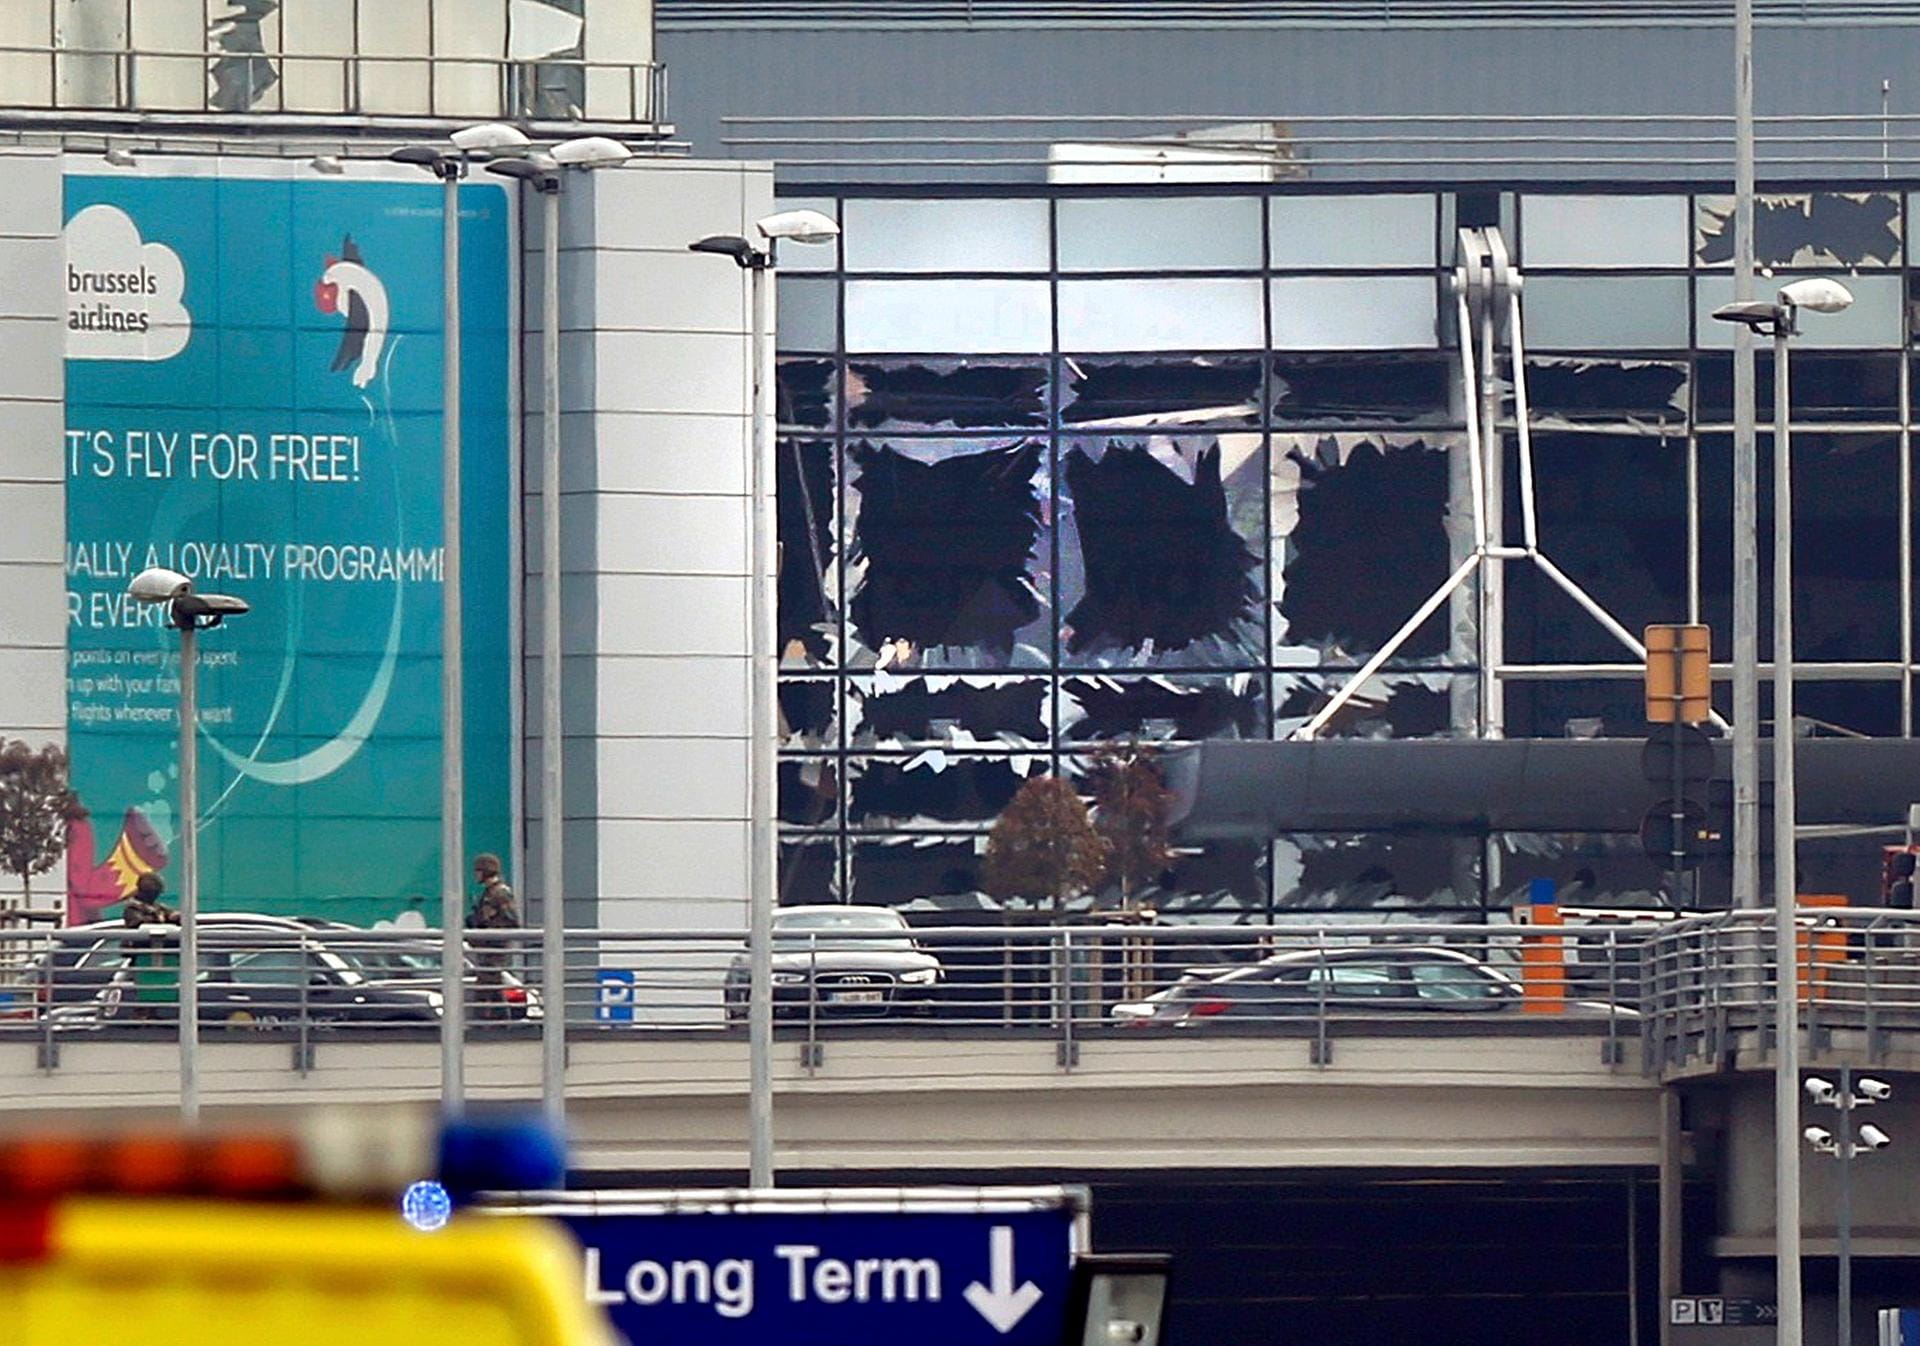 Am Dienstagmorgen gegen acht Uhr ist es in der Abflughalle des Brüsseler Flughafens Zaventem zu zwei Explosionen gekommen. Vor den Explosionen am Flughafen sind der Nachrichtenagentur Belga zufolge mehrere Schüsse gefallen. Geborstene Fensterscheiben zeigen das Ausmaß der Zerstörung.